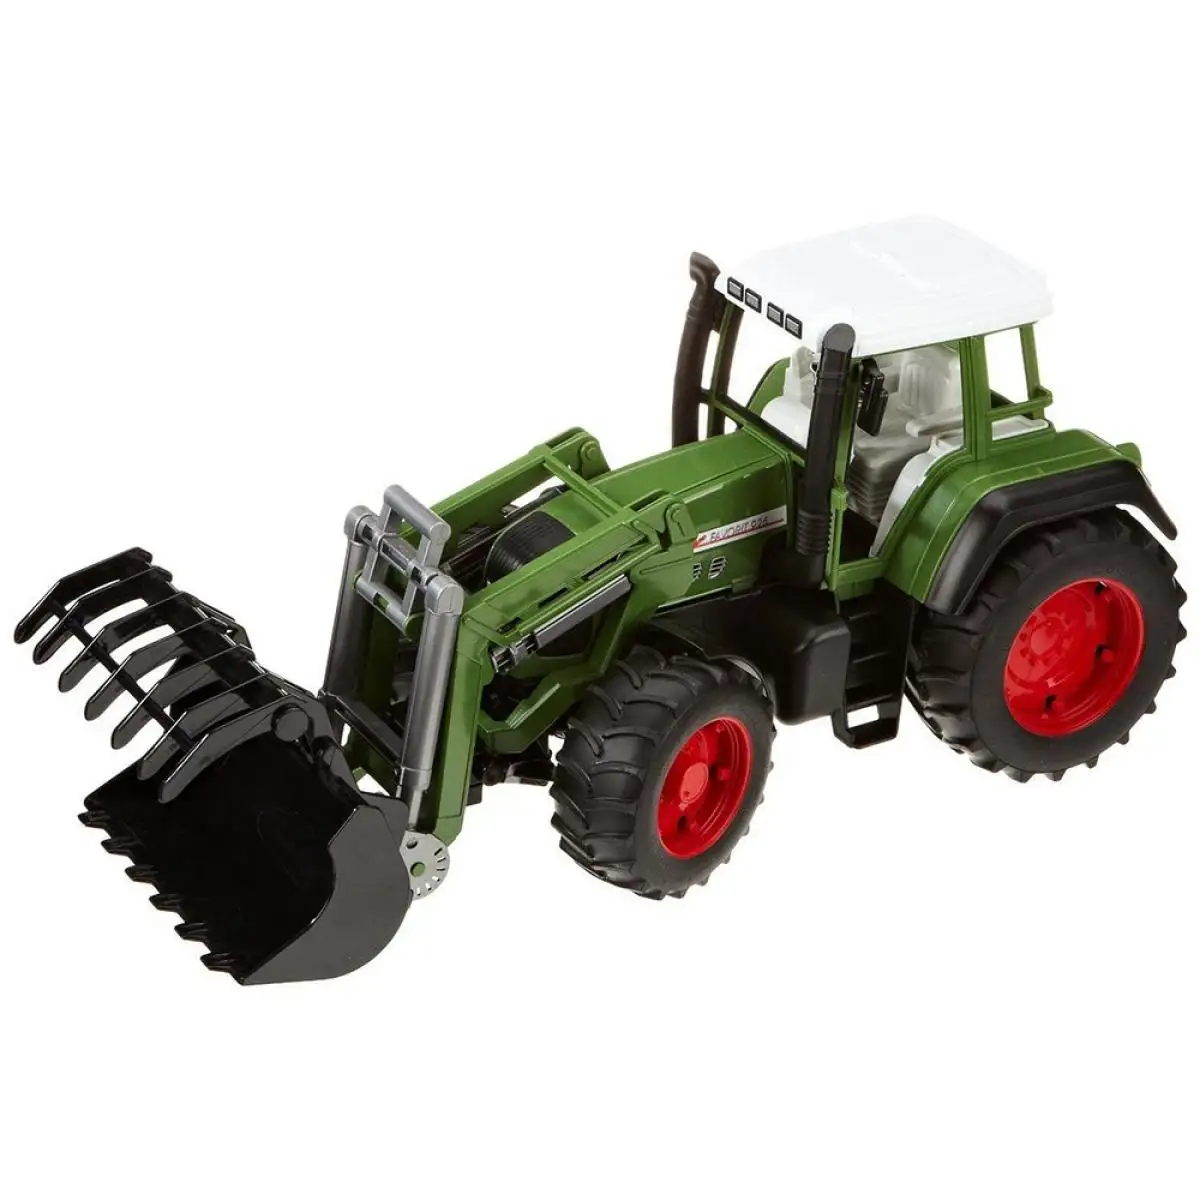 Großhandels preis Lieferant der Landwirtschaft Fendt Traktor Mit schnellem Versand gebrauchte Ackers chlepper zum Verkauf